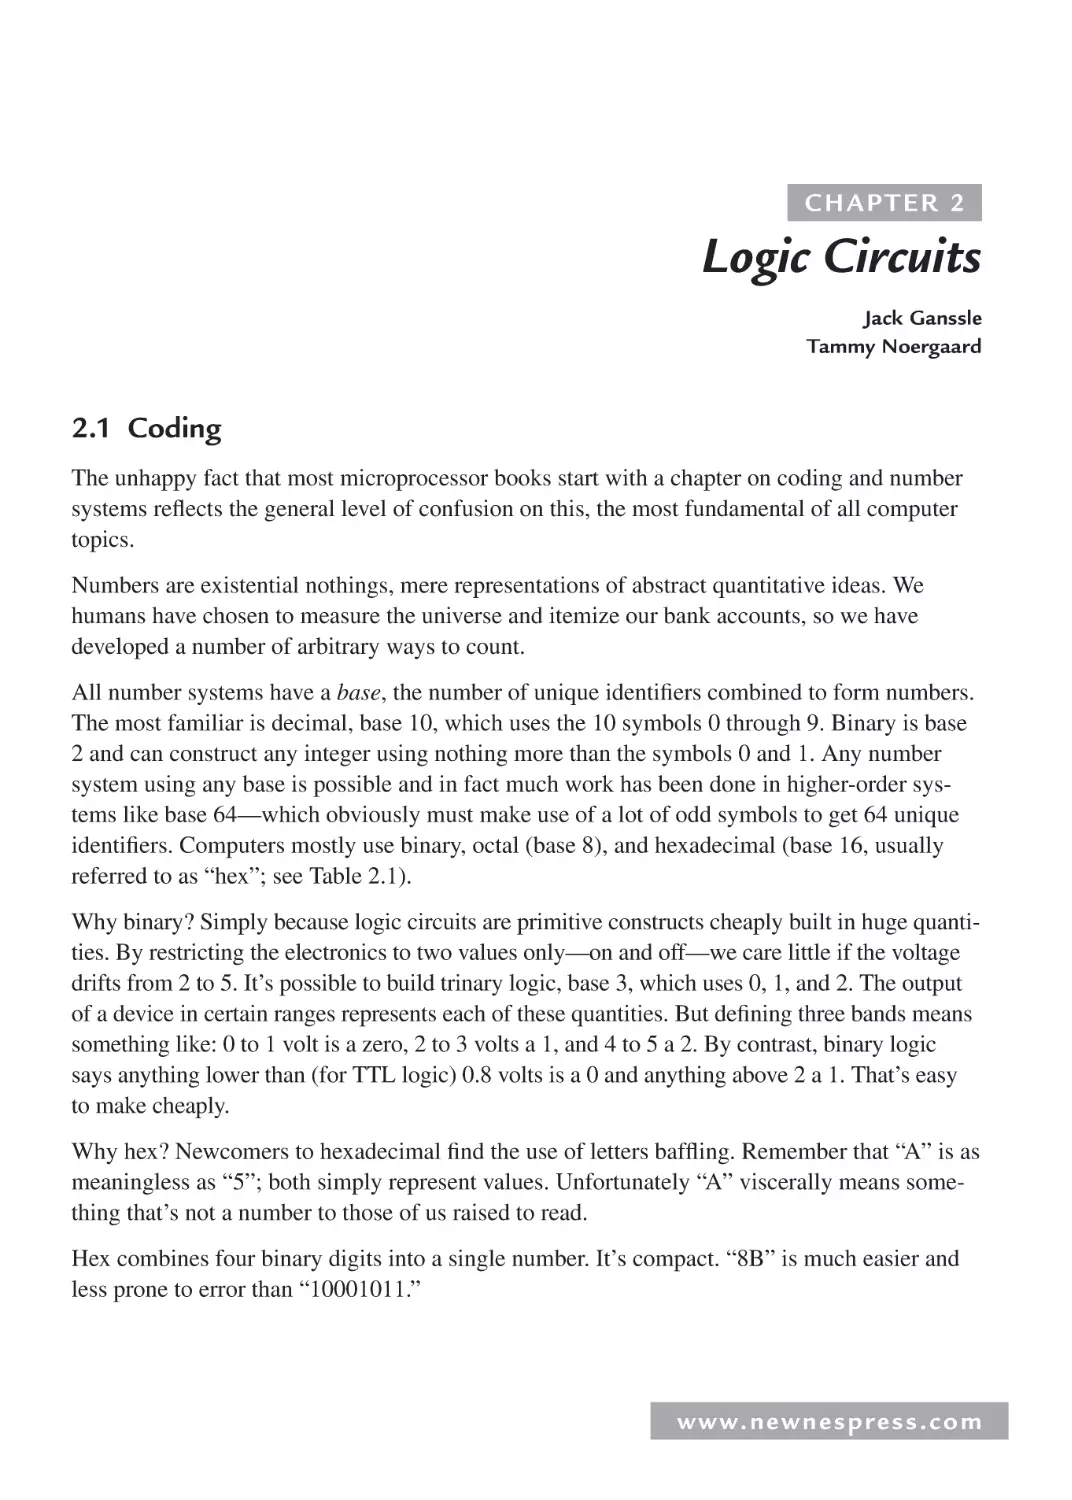 2 Logic Circuits
2.1 Coding